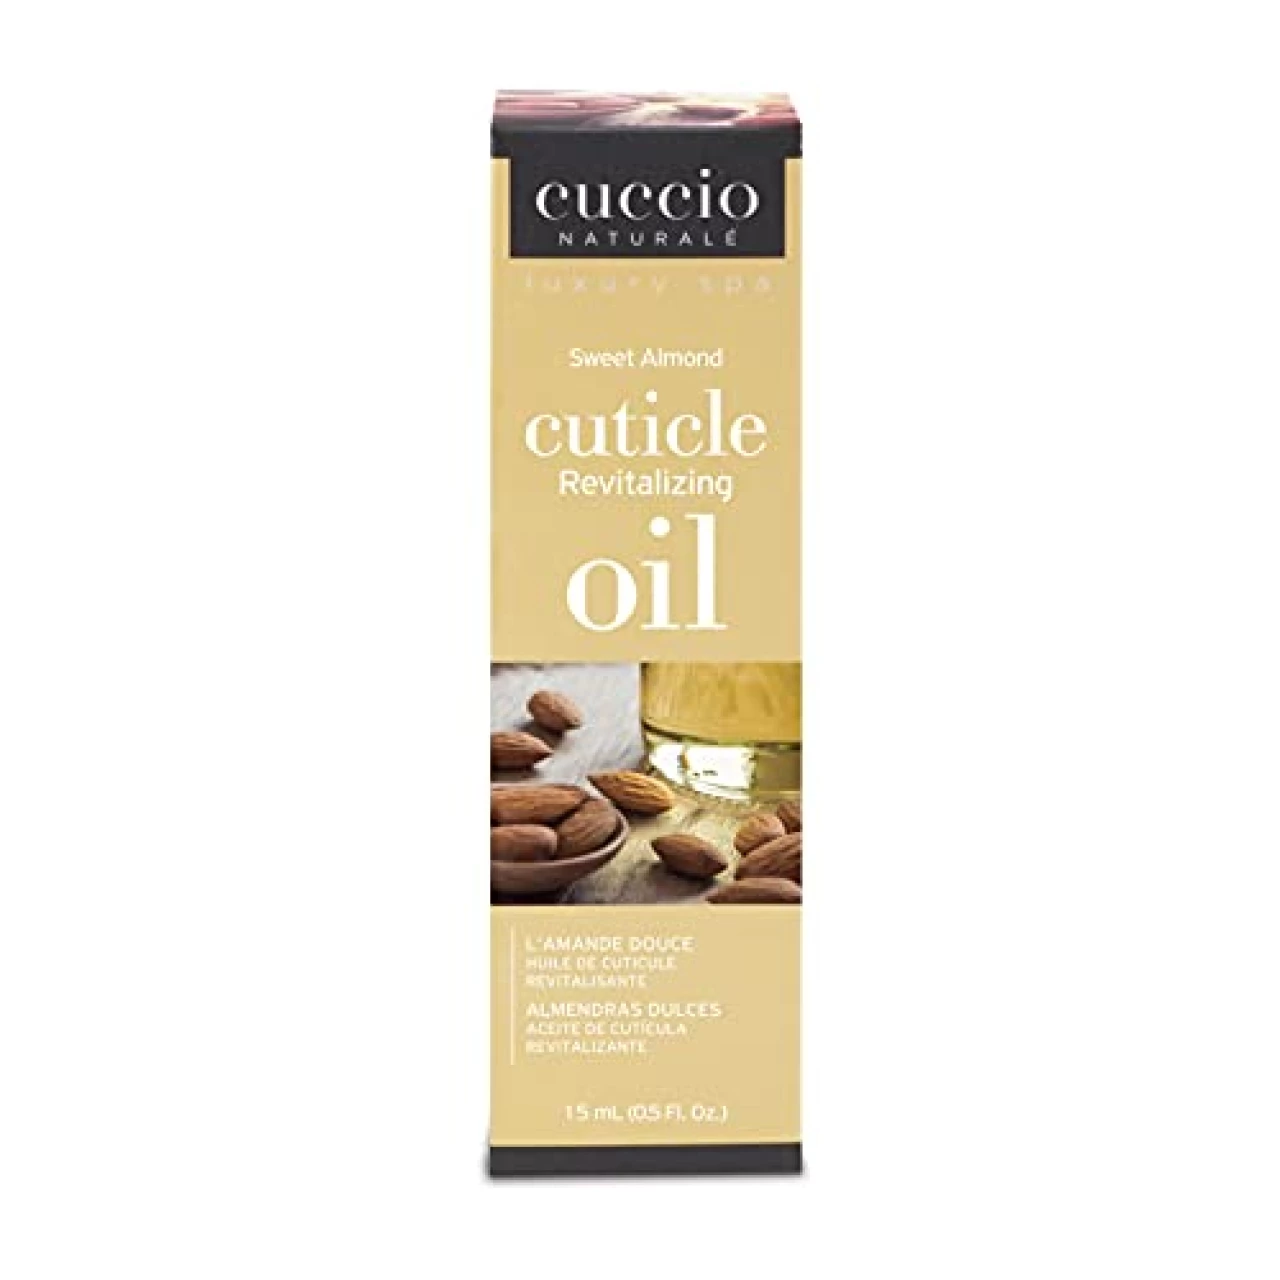 Cuccio Naturale Sweet Almond Cuticle Oil 15ml